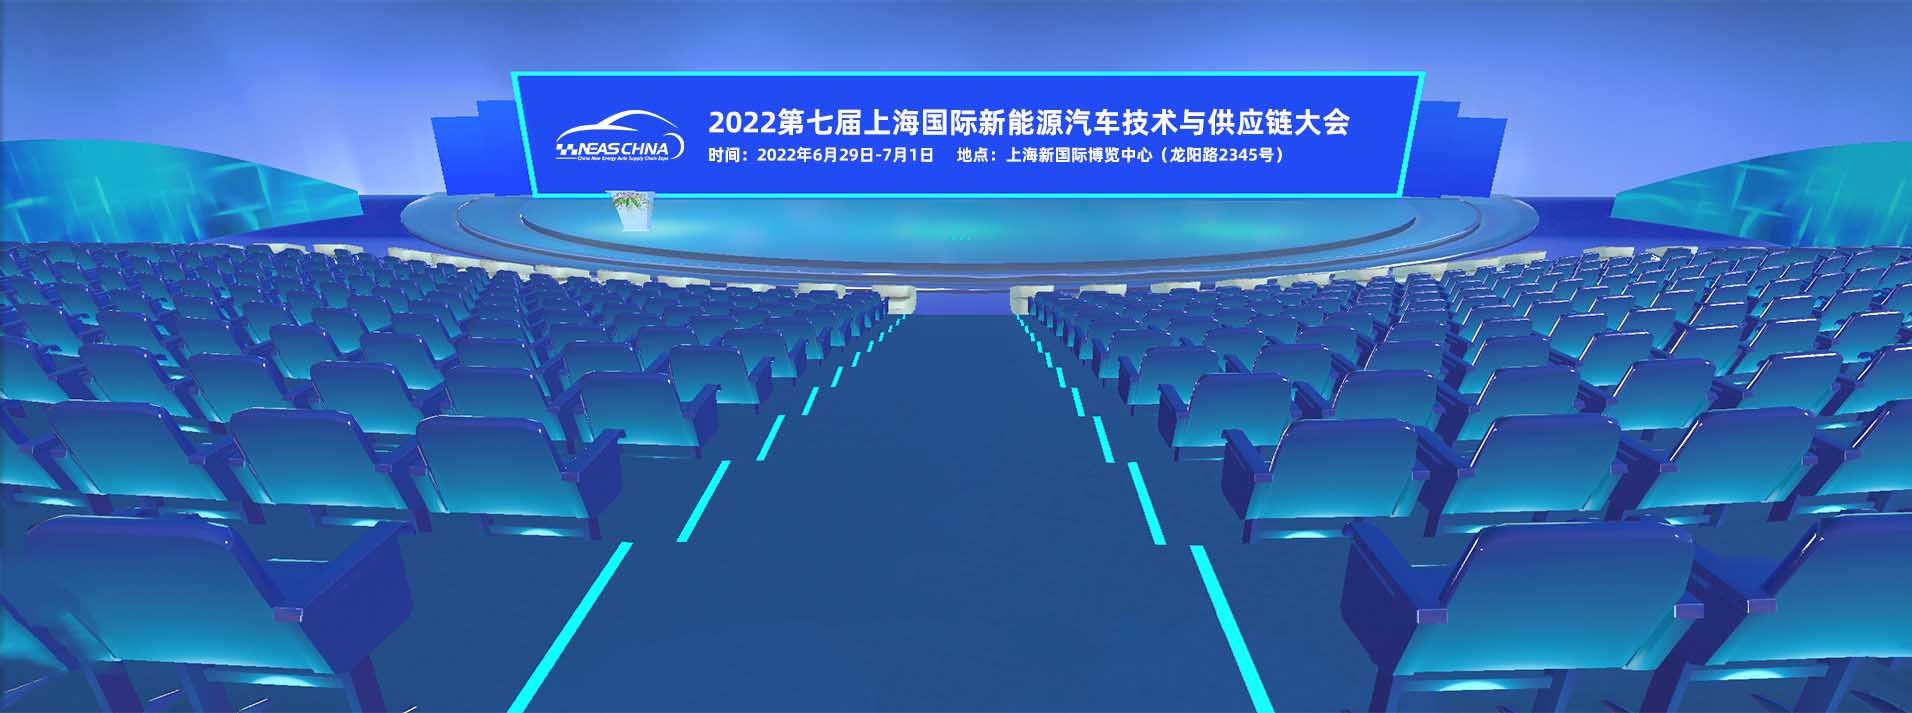 上海新能源首页会议论坛图